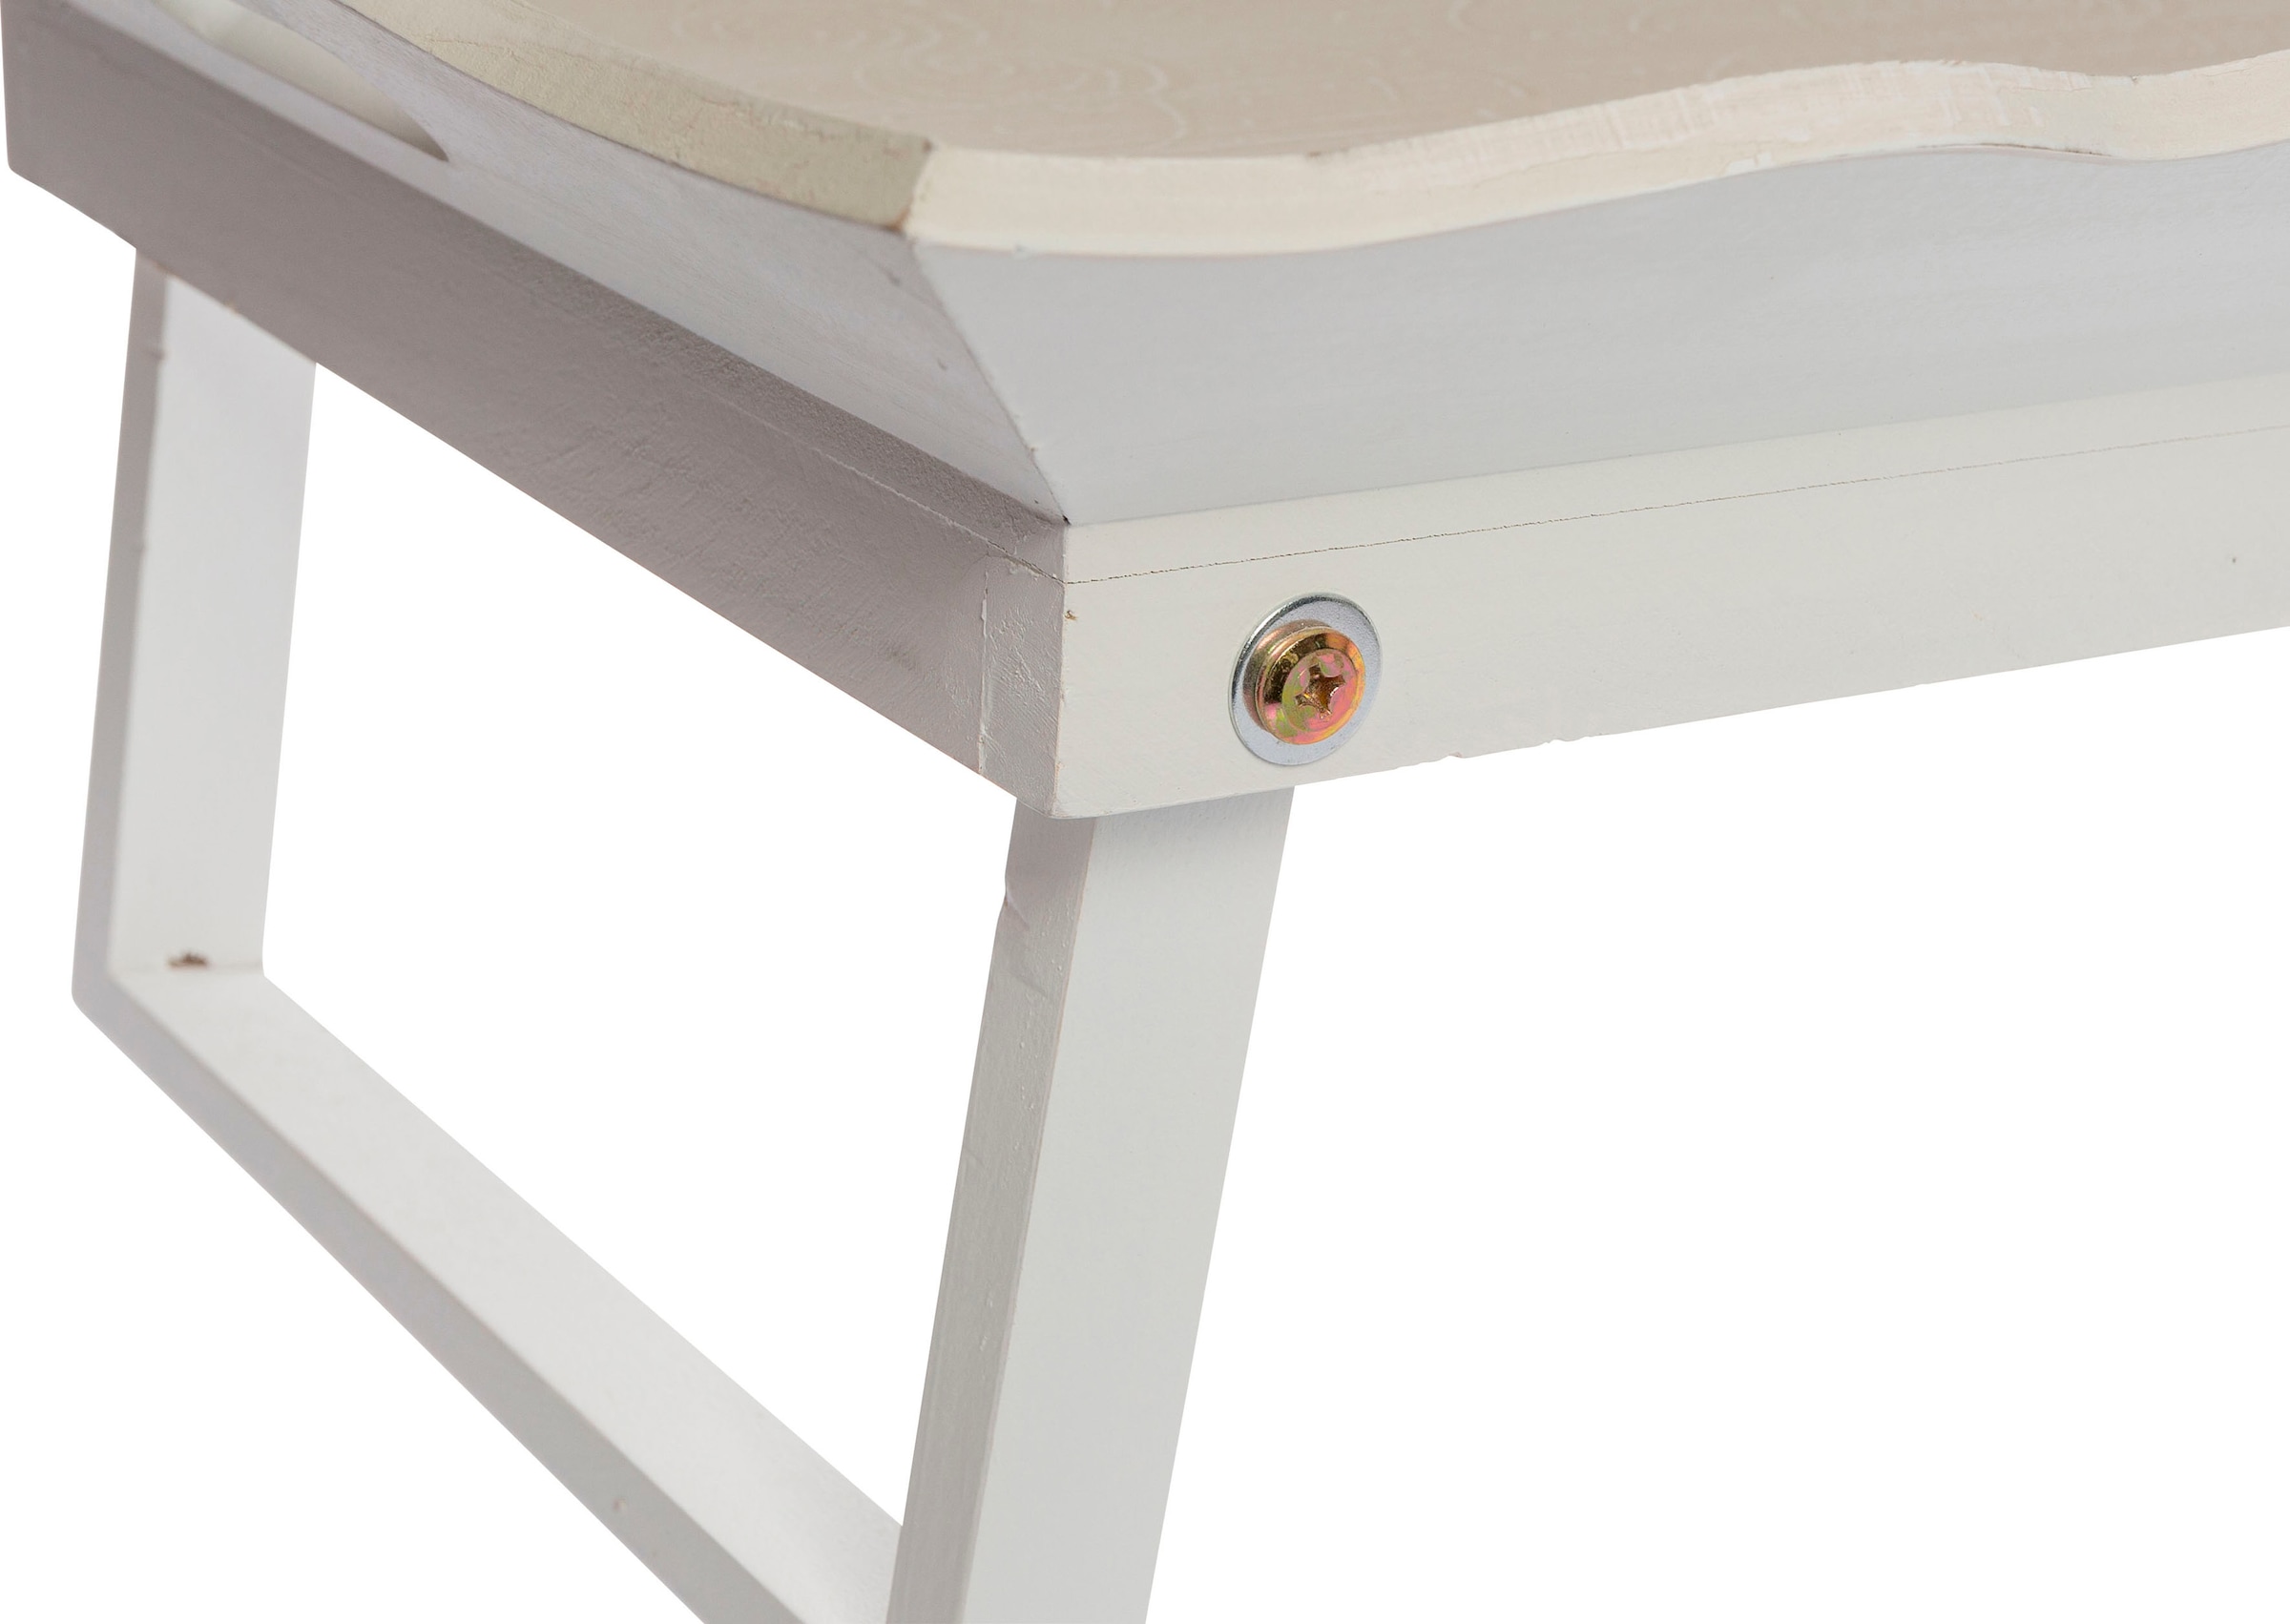 Myflair Möbel & Accessoires Tablett »Mariella, beige«, Bett-Tablett mit praktischen Standfüßen